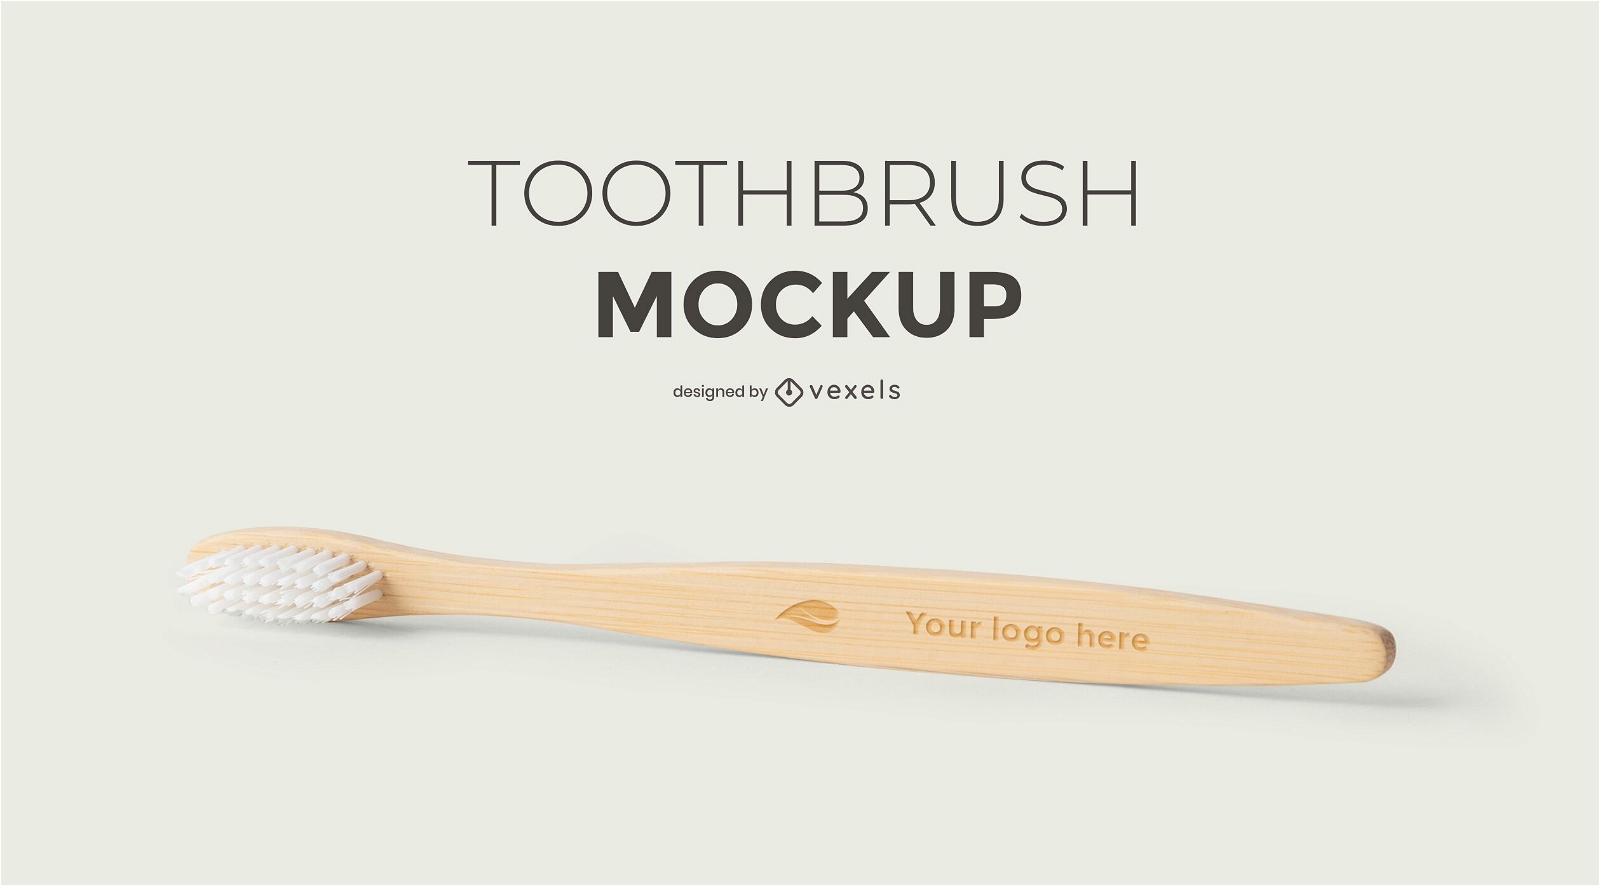 Toothbrush mockup design